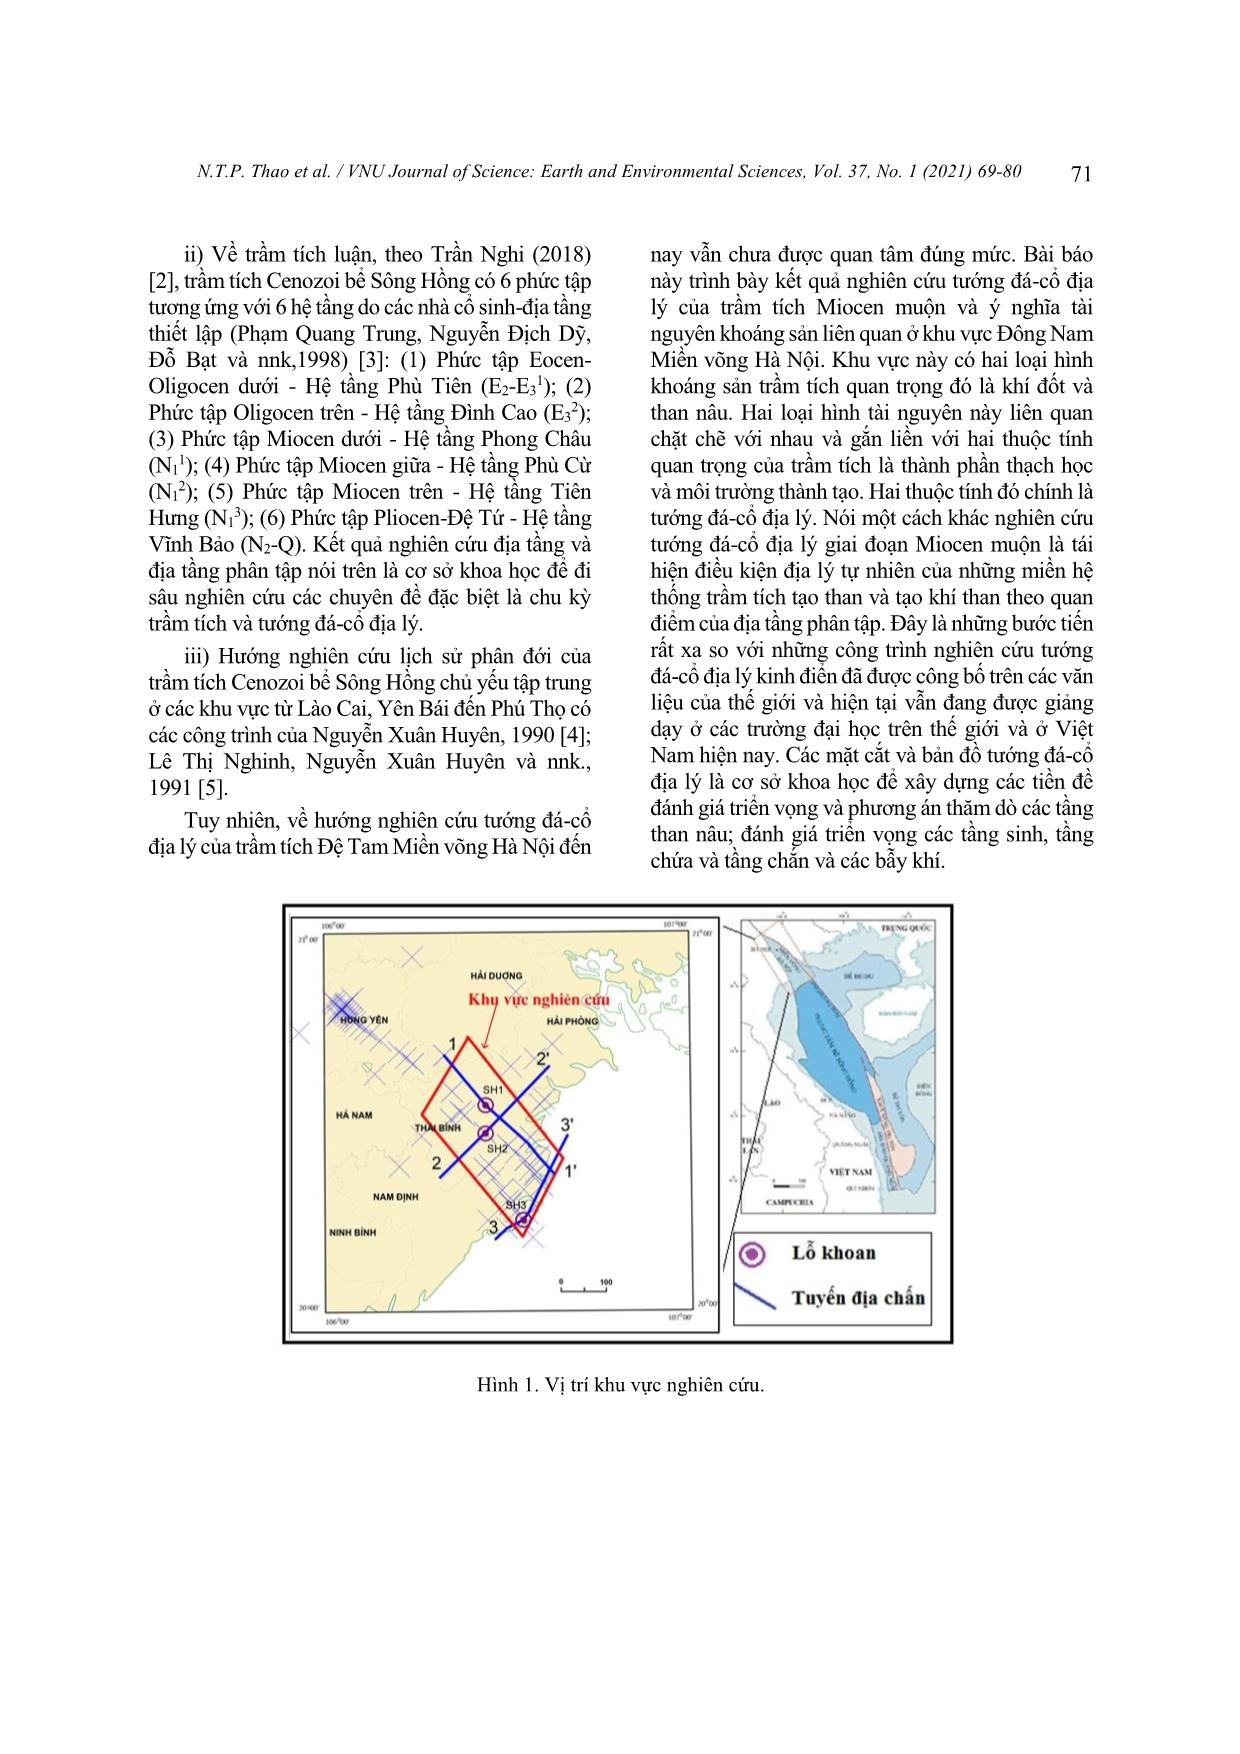 Đặc điểm tướng đá - Cổ địa lý Miocen muộn khu vực Đông Nam miền võng Hà Nội trang 3